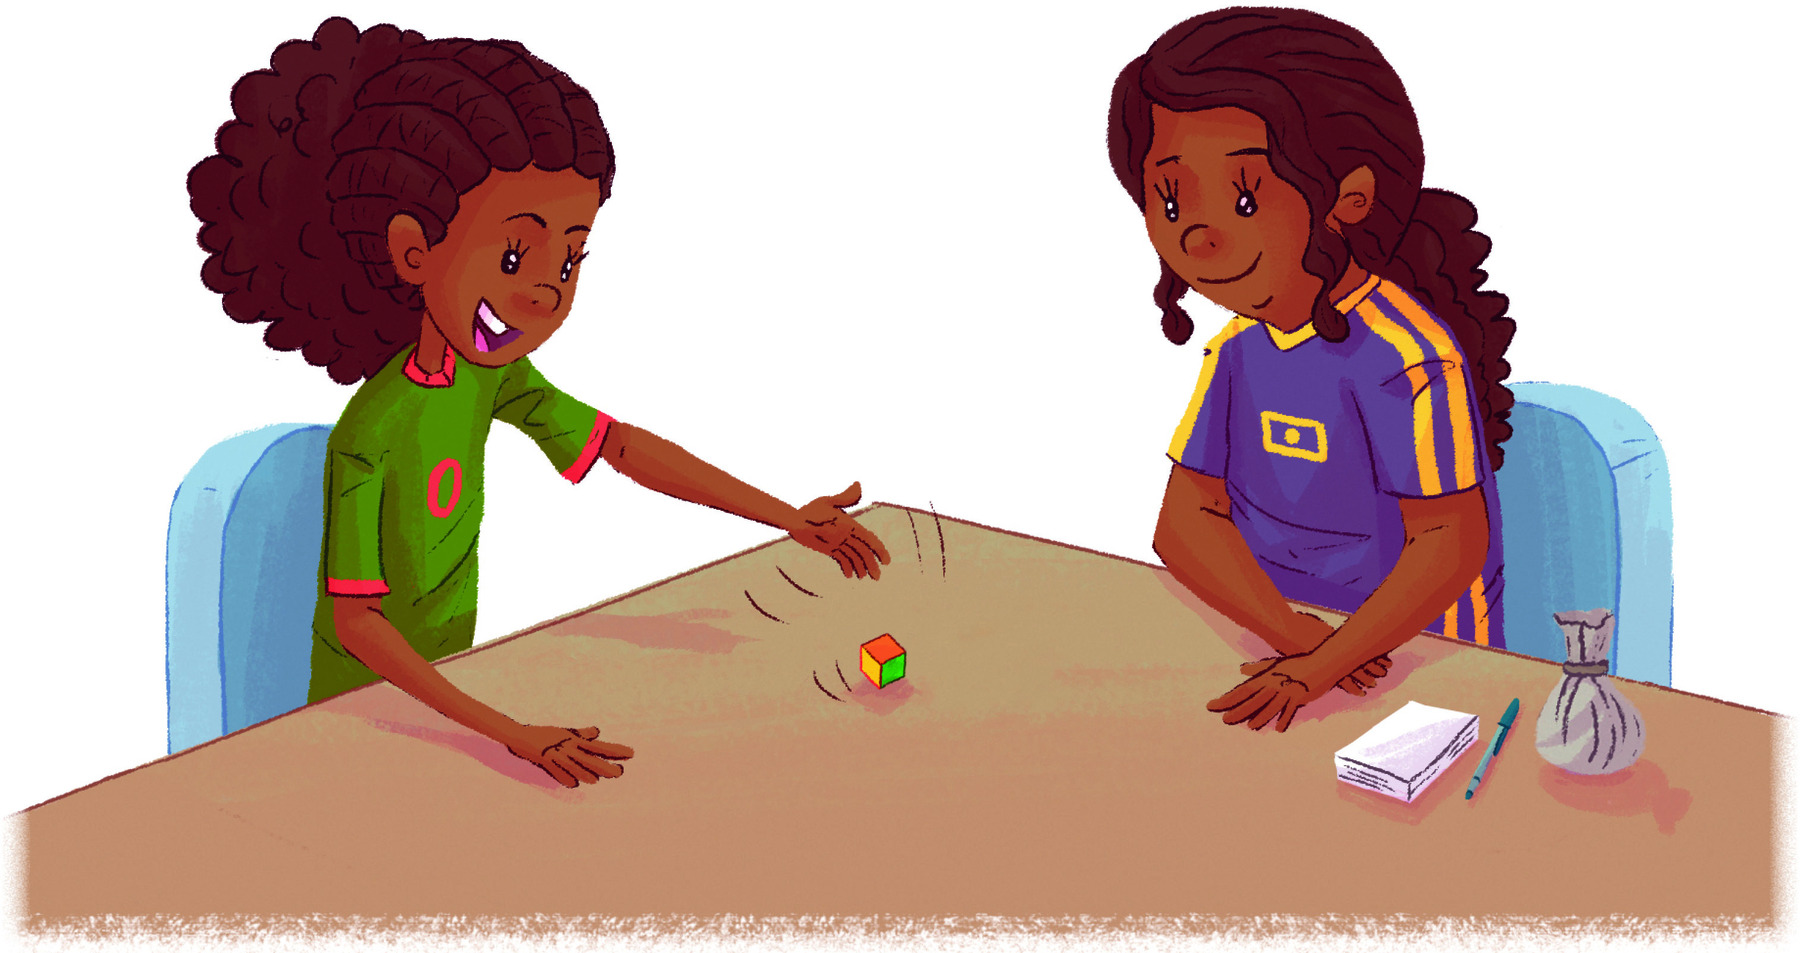 Ilustração. Duas meninas sentadas próximas a uma mesa. A menina à esquerda, joga o dado colorido. A menina da direita, observa. Ao lado dela, papeis, um lápis e um saquinho.